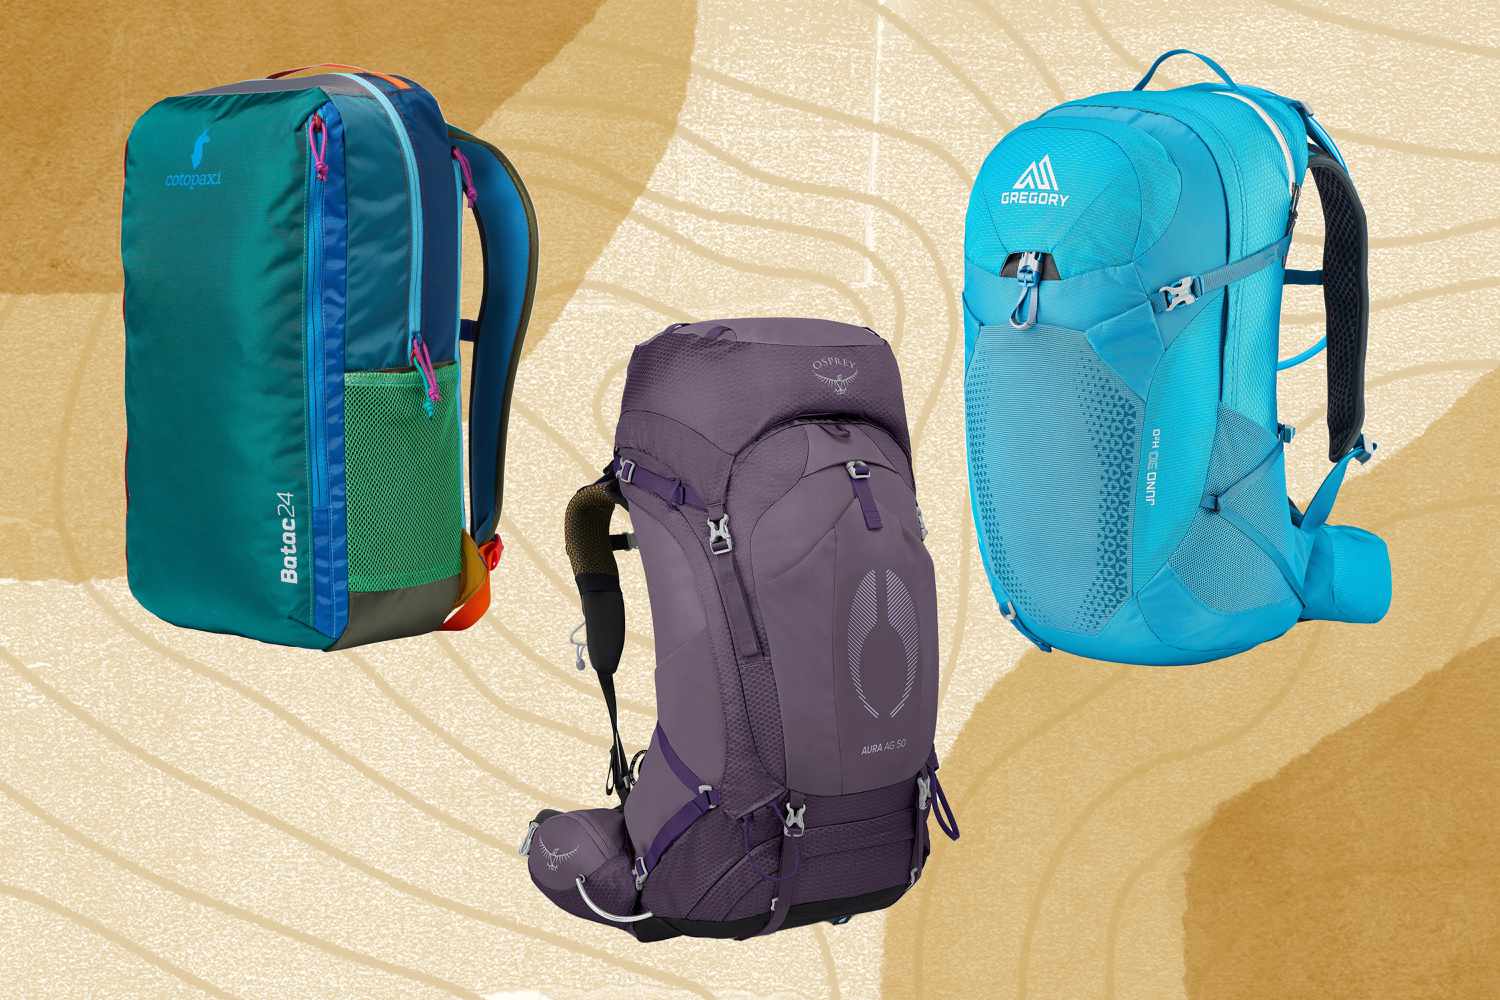 online shopping for hiking backpacks 